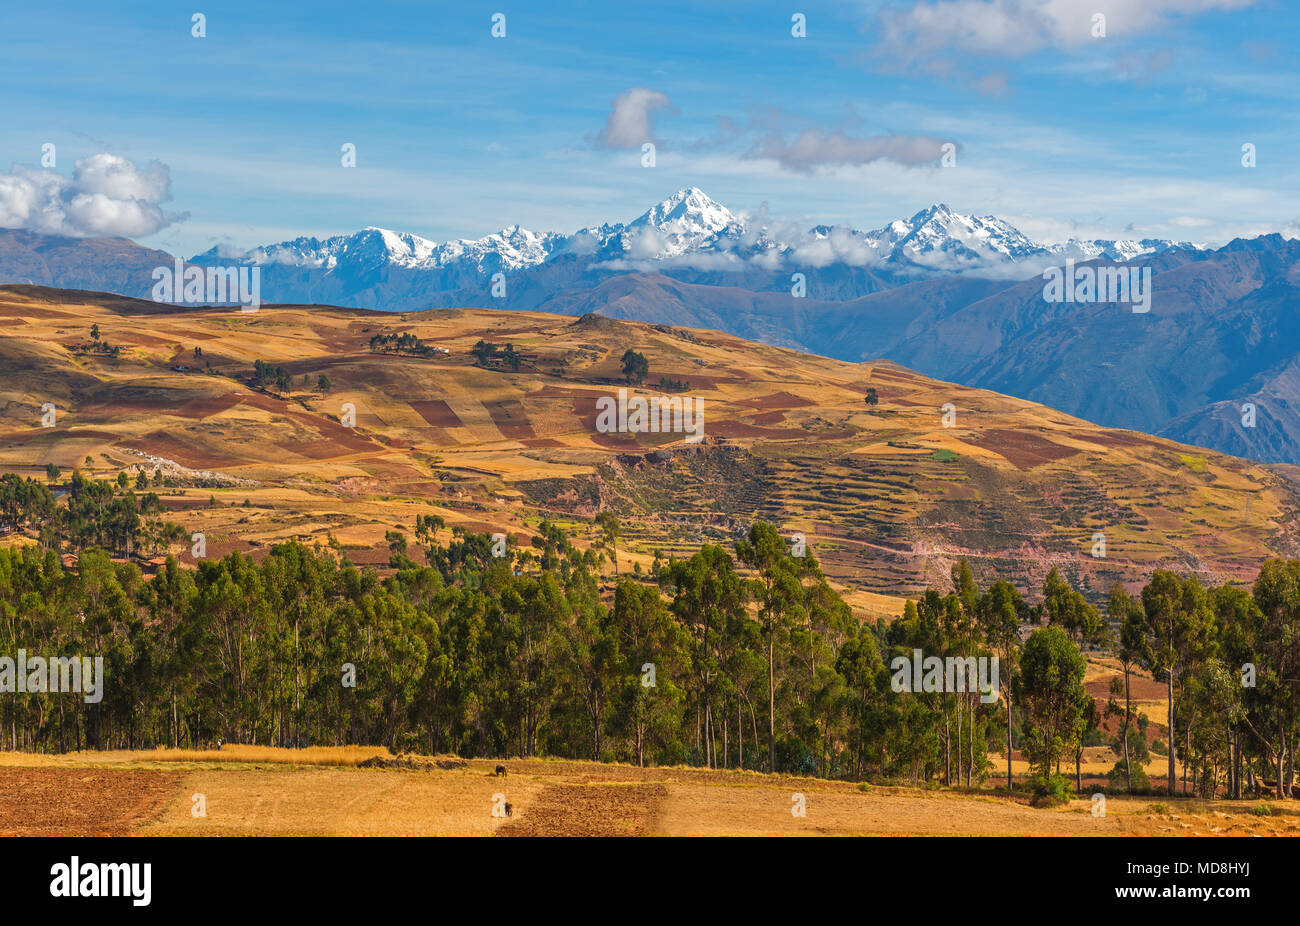 Il paesaggio della Valle Sacra degli Inca con campi di agricoltura e il vulcano Salkantay nella Cordigliera delle Ande vicino a Cusco, Perù. Foto Stock